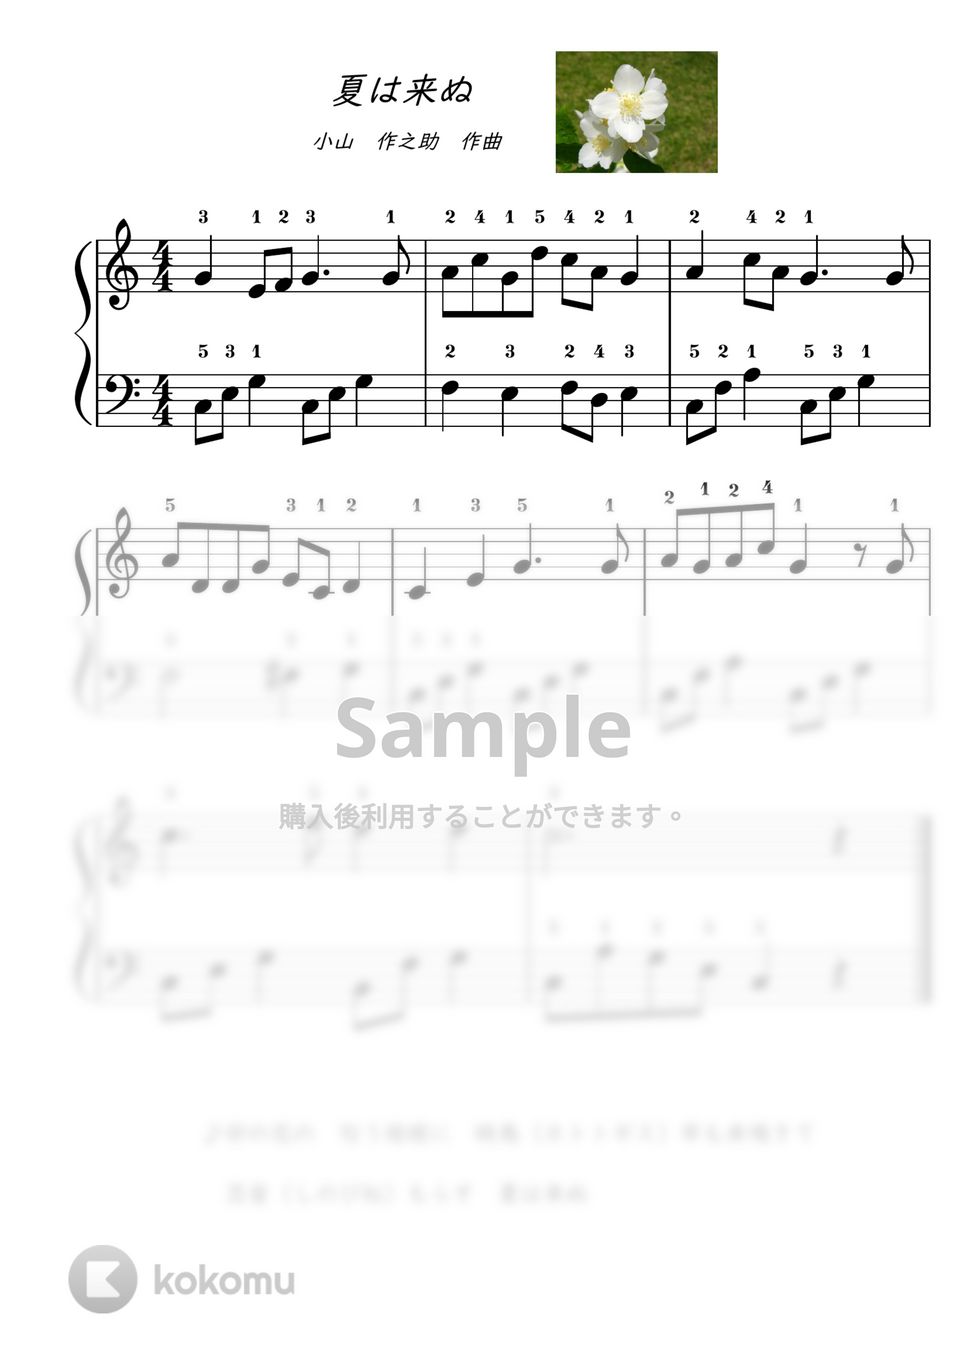 【ピアノ初級】夏は来ぬ (夏) by ピアノのせんせいの楽譜集